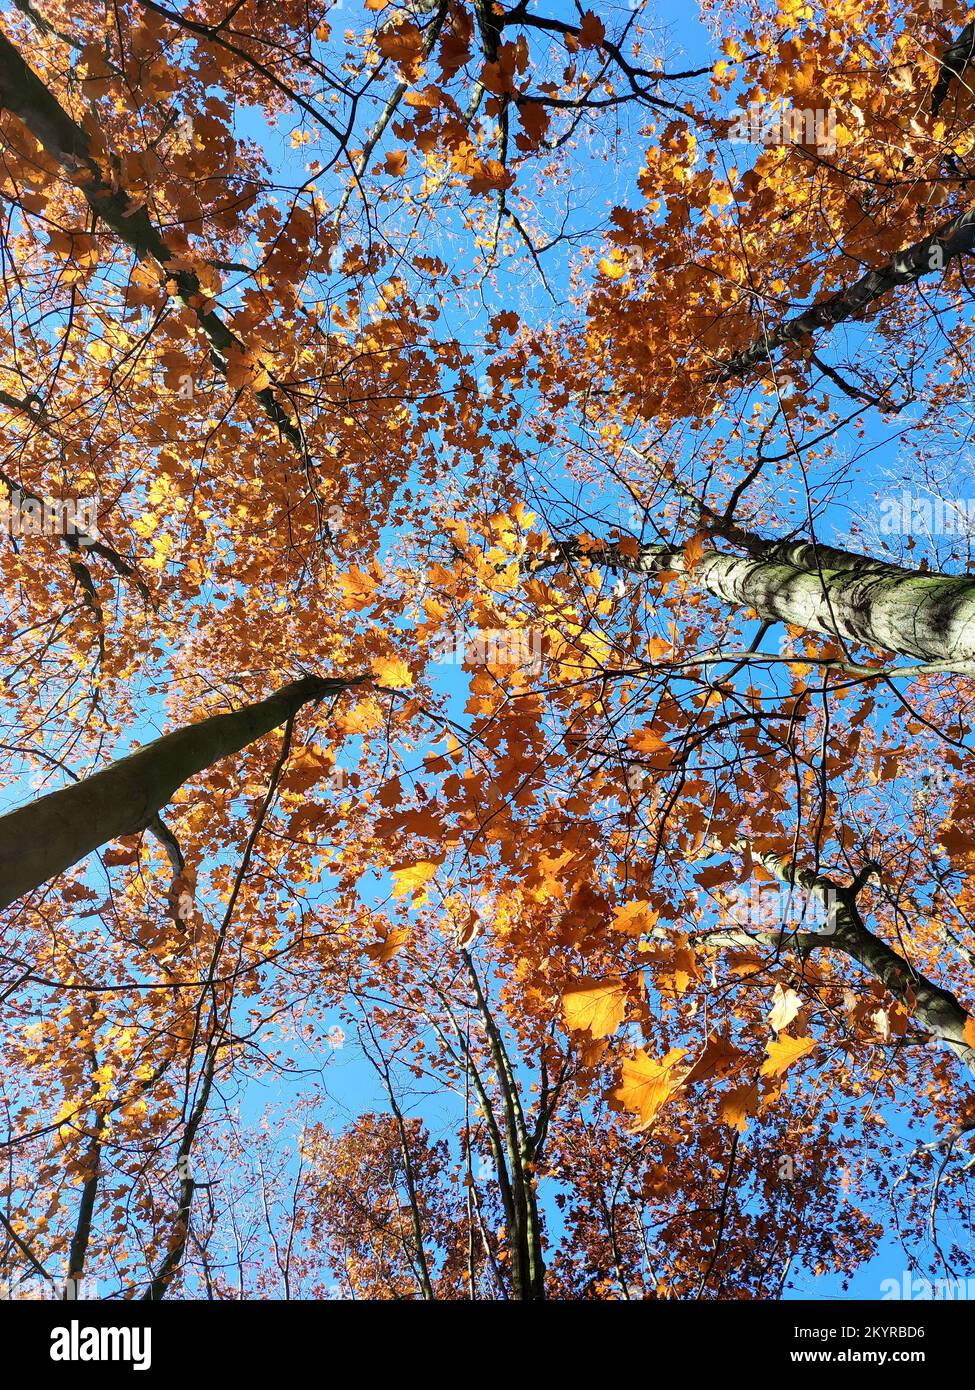 Baumwipfel mit roten orangefarbenen Blättern, die im Wind im Hintergrund schweben, ein klarer blauer Himmel am sonnigen Herbsttag. Ansicht von unten. Wälder, Wälder, Natur im Herbst, saisonale Kulisse. Wunderschöner natürlicher Hintergrund Stockfoto